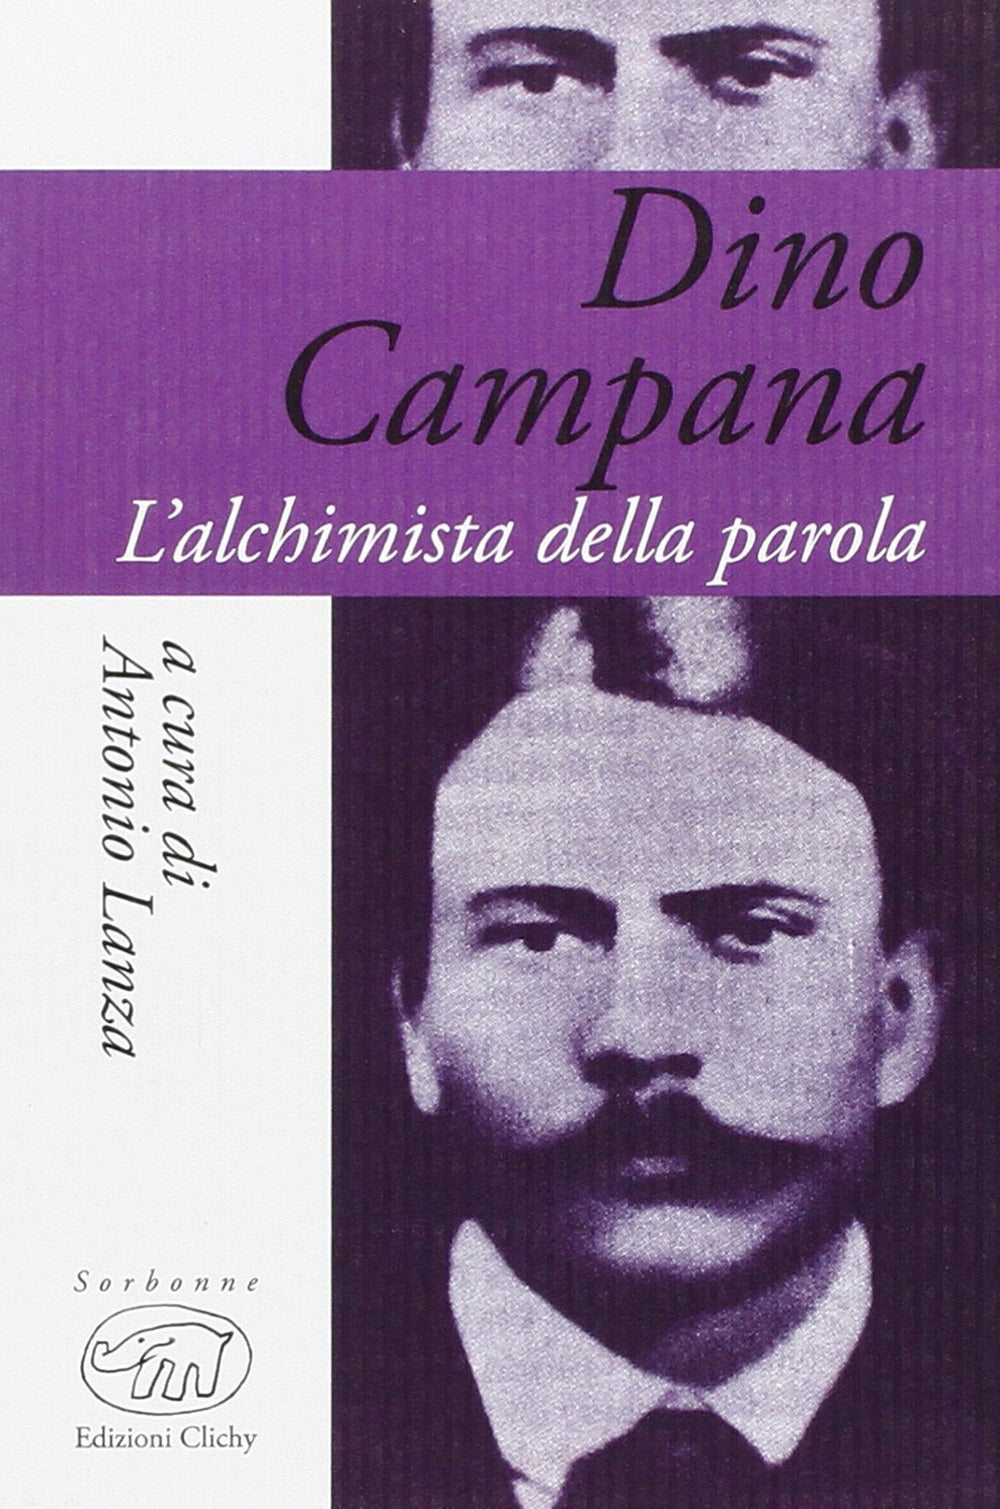 Dino Campana. L'alchimista della parola.